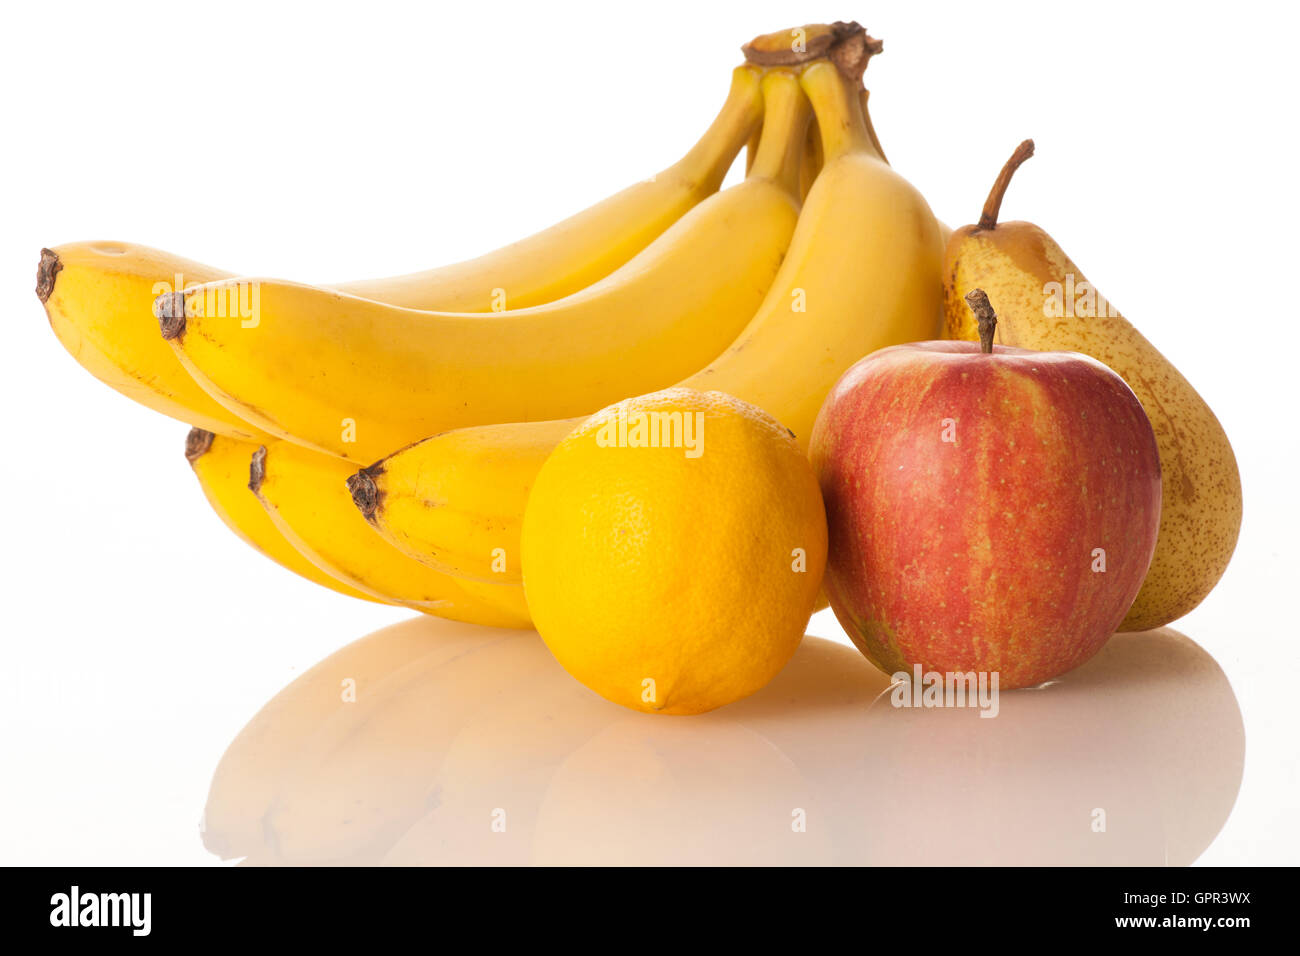 Frisches Obst Banane Zitrone Haufen Apfel- und Birnensorten isoliert auf weiß Stockfoto